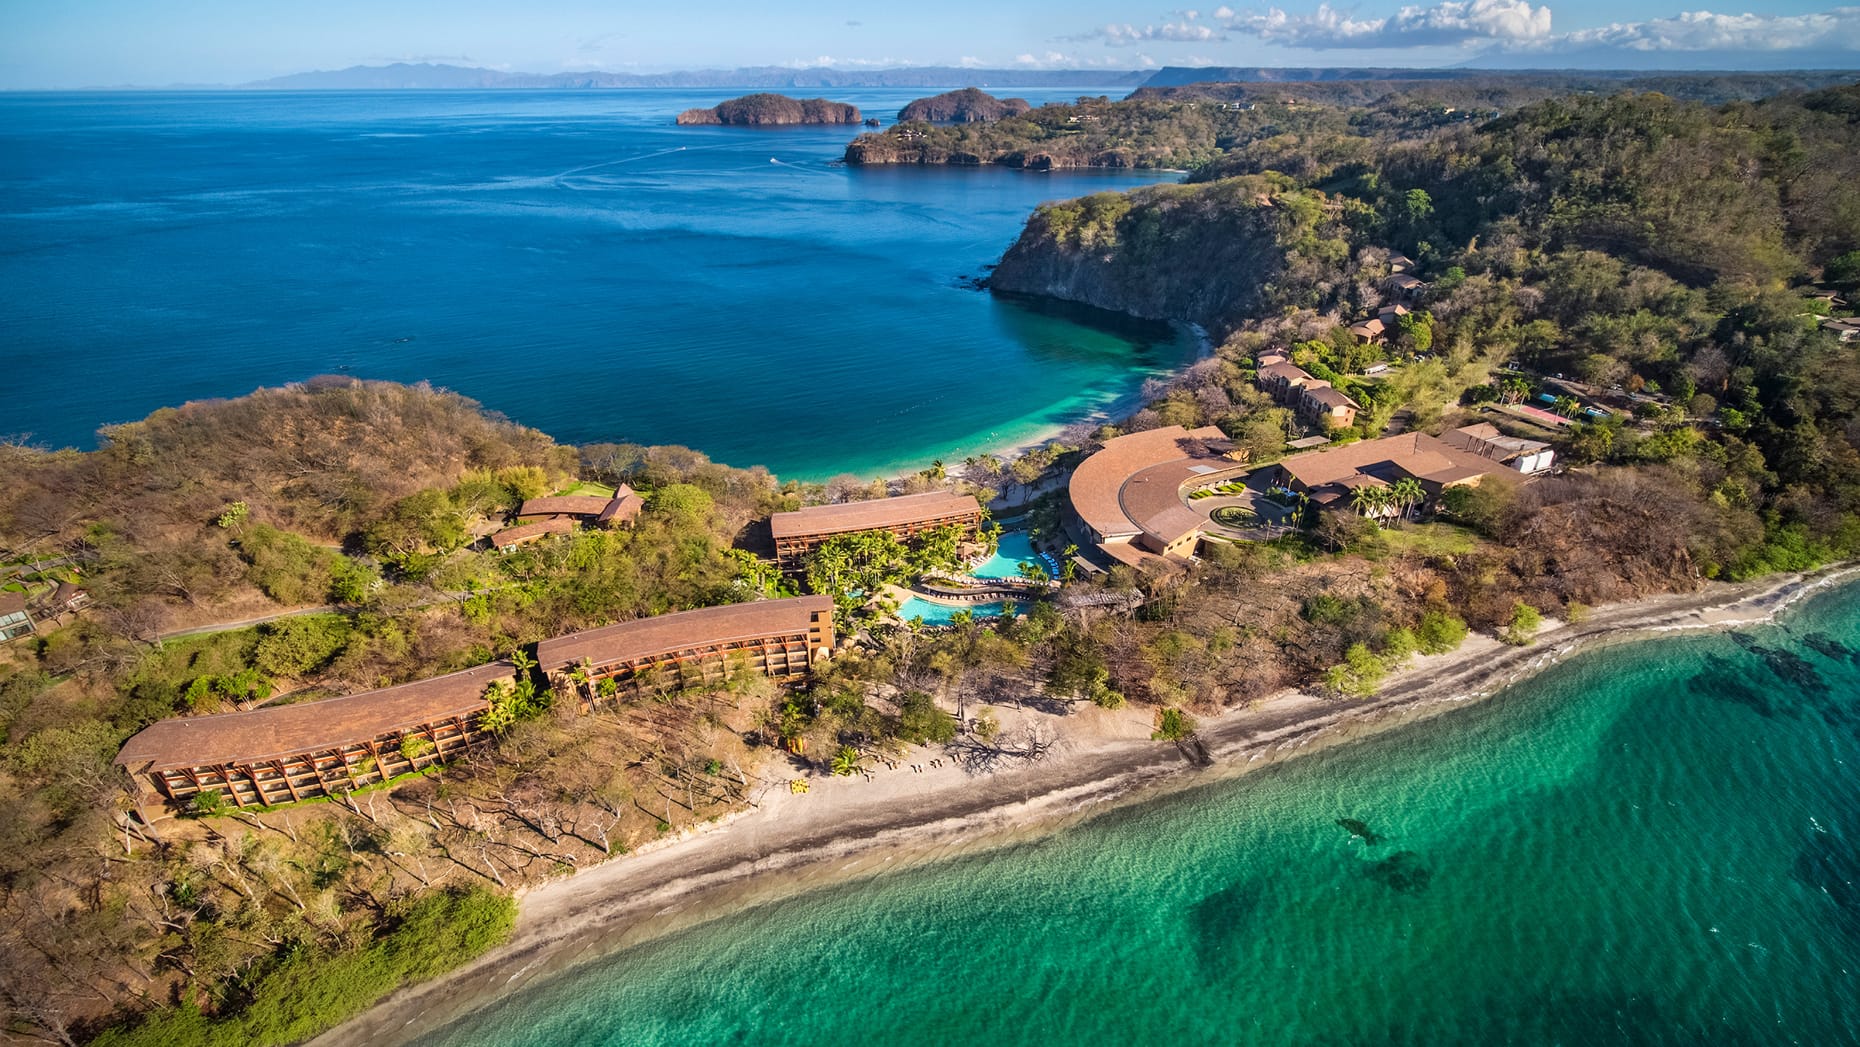 Four Seasons Private Residences Prieta Bay Peninsula Papagayo